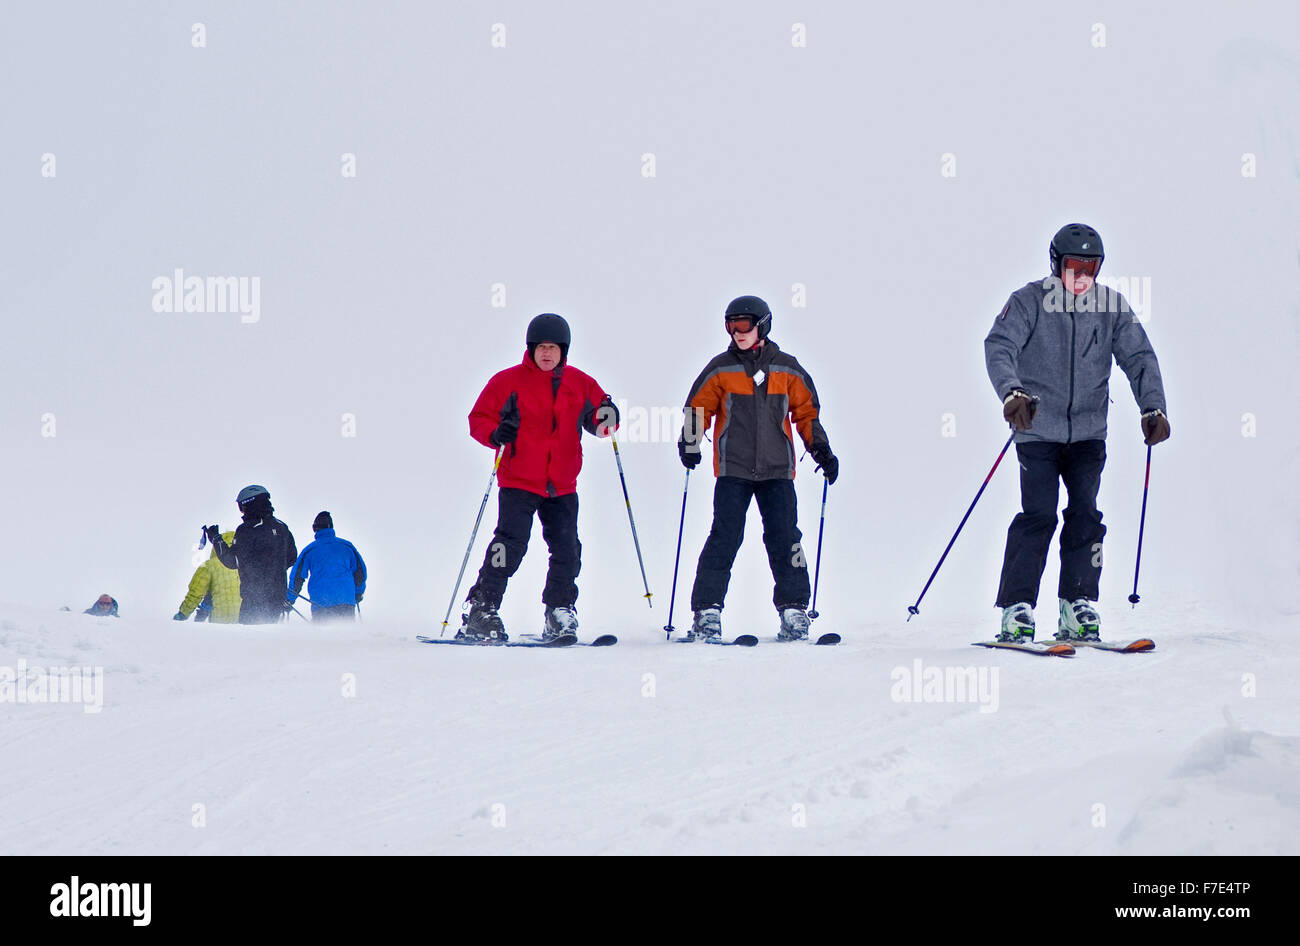 Los esquiadores vistiendo ropa de invierno completo en montañas Cairngorm en frío y viento condiciones meteorológicas adversas con mala visibilidad. Foto de stock